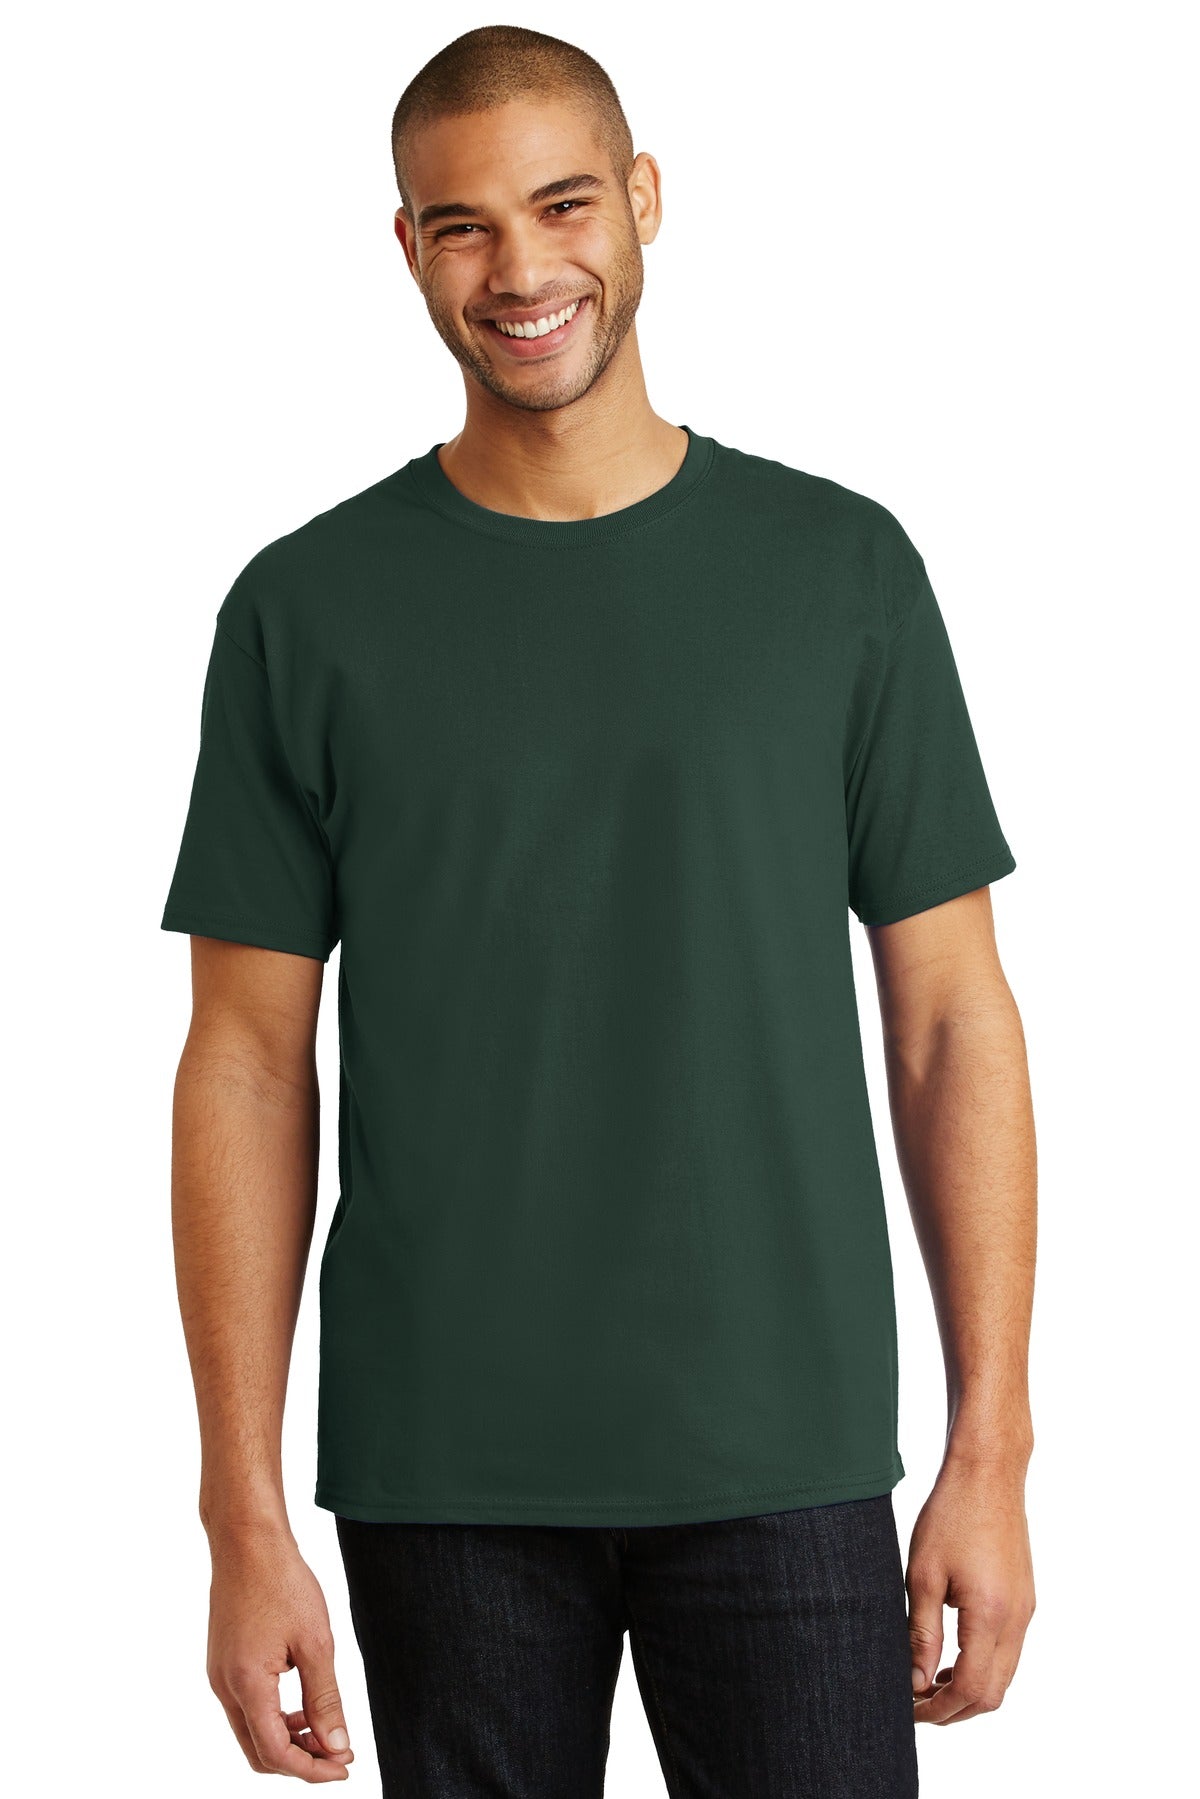 Hanes® - Authentic 100% Cotton T-Shirt. 5250 [Deep Forest] - DFW Impression